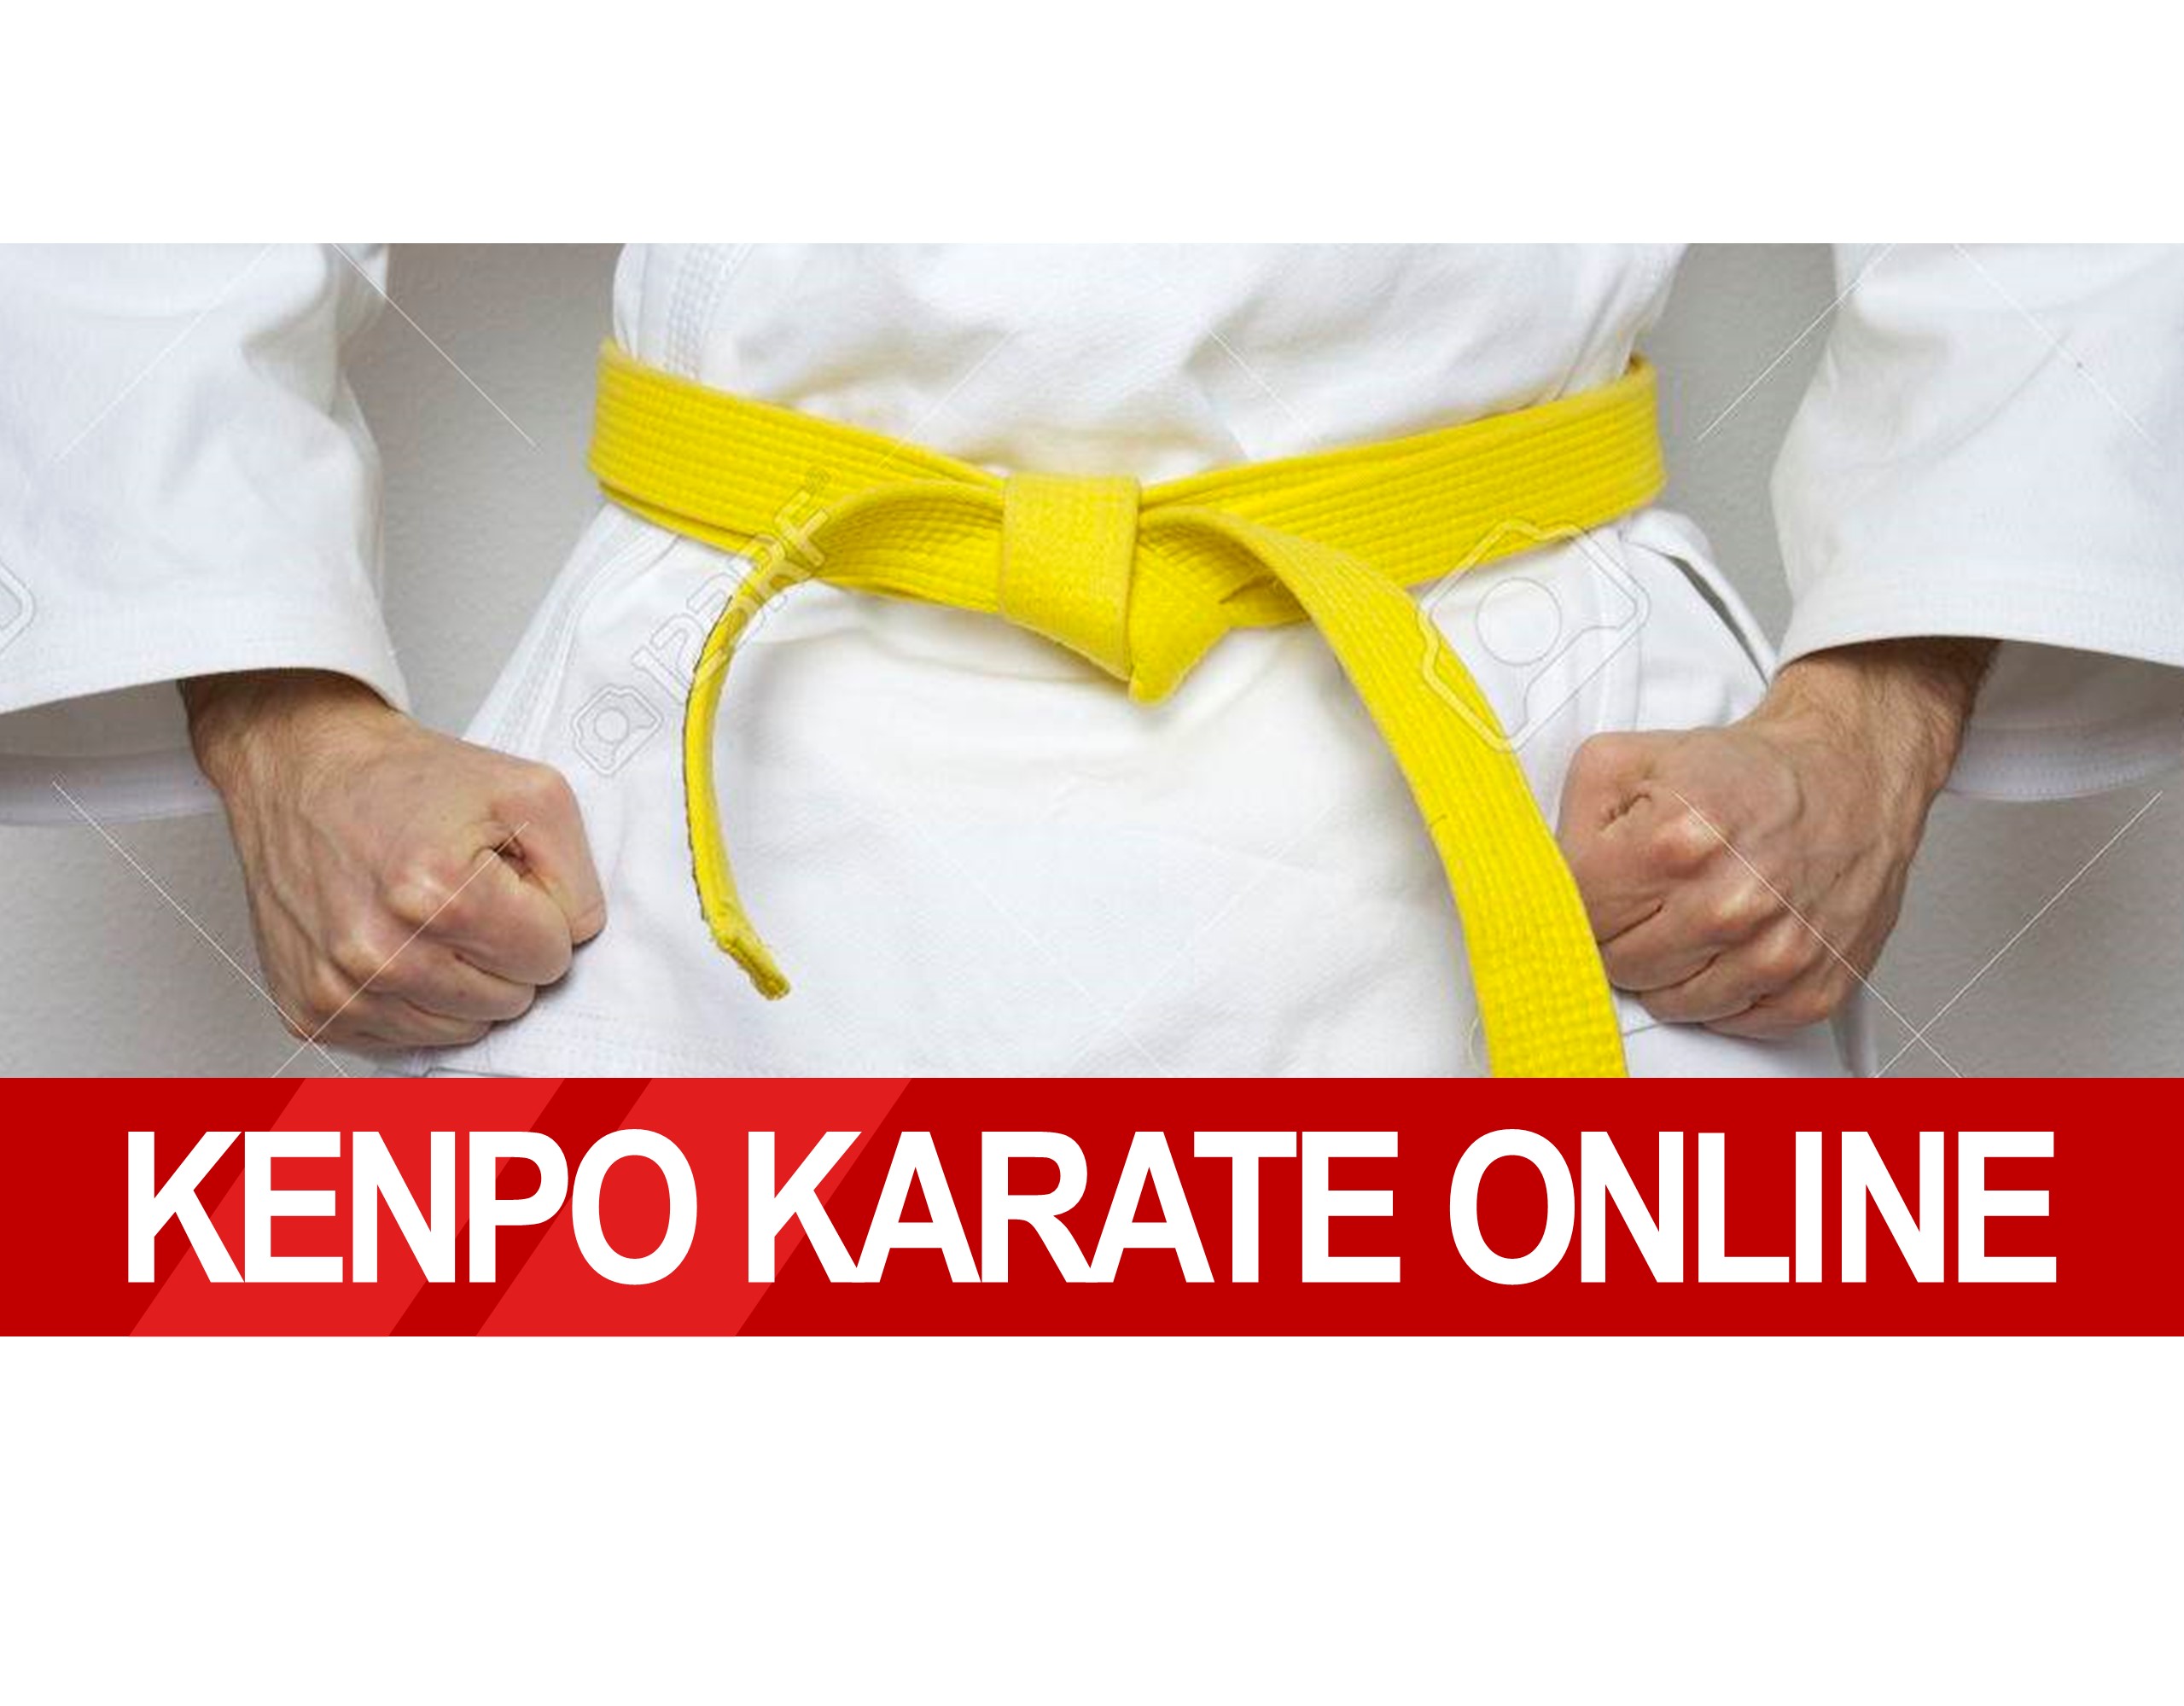 Martial arts online